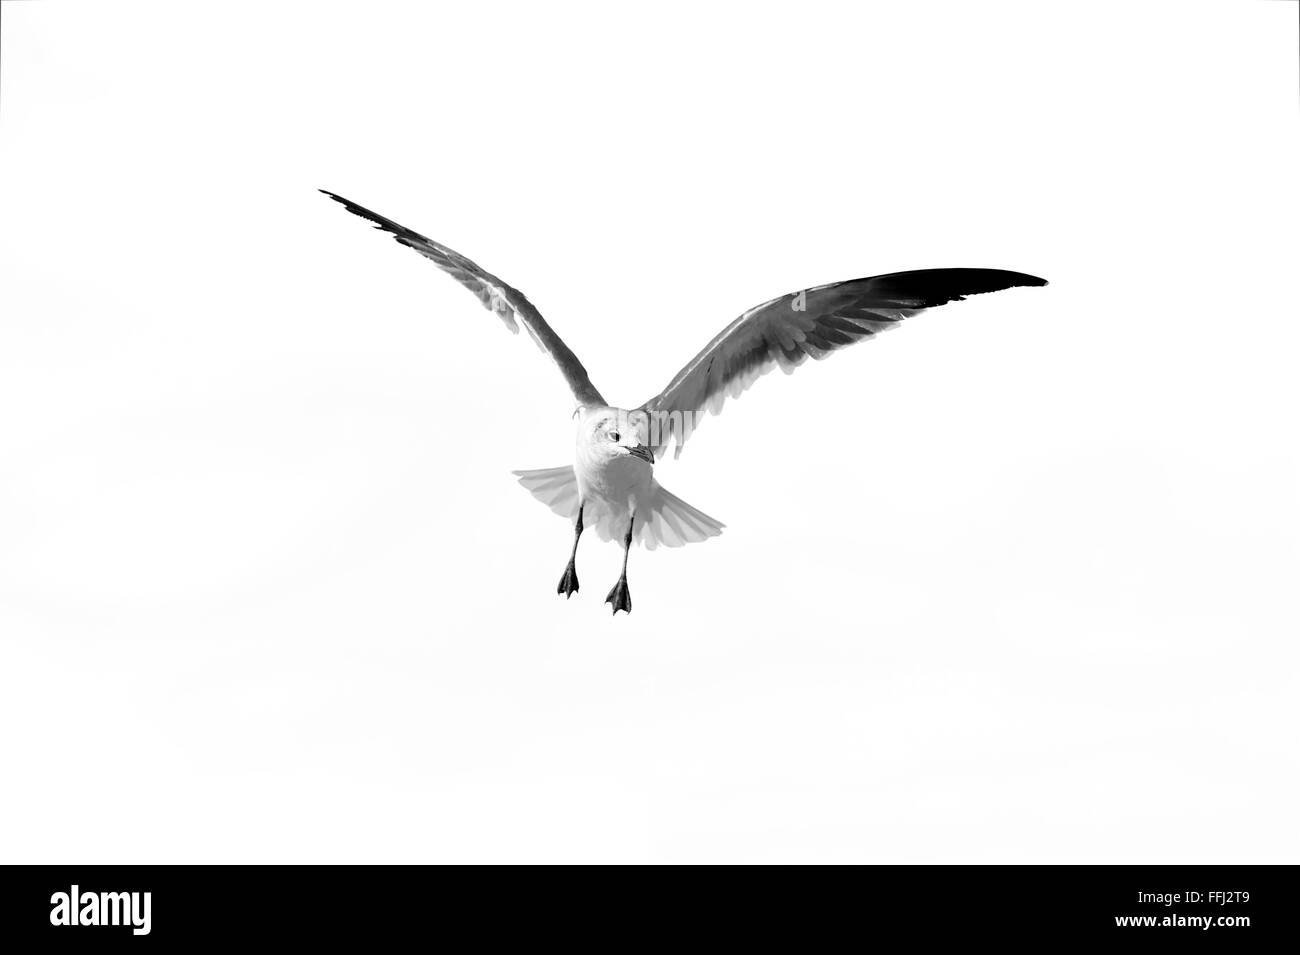 Es un pájaro volando en blanco y negro cerrado detallada de un hermoso pájaro speading sus alas, mientras a mediados de vuelo. Foto de stock